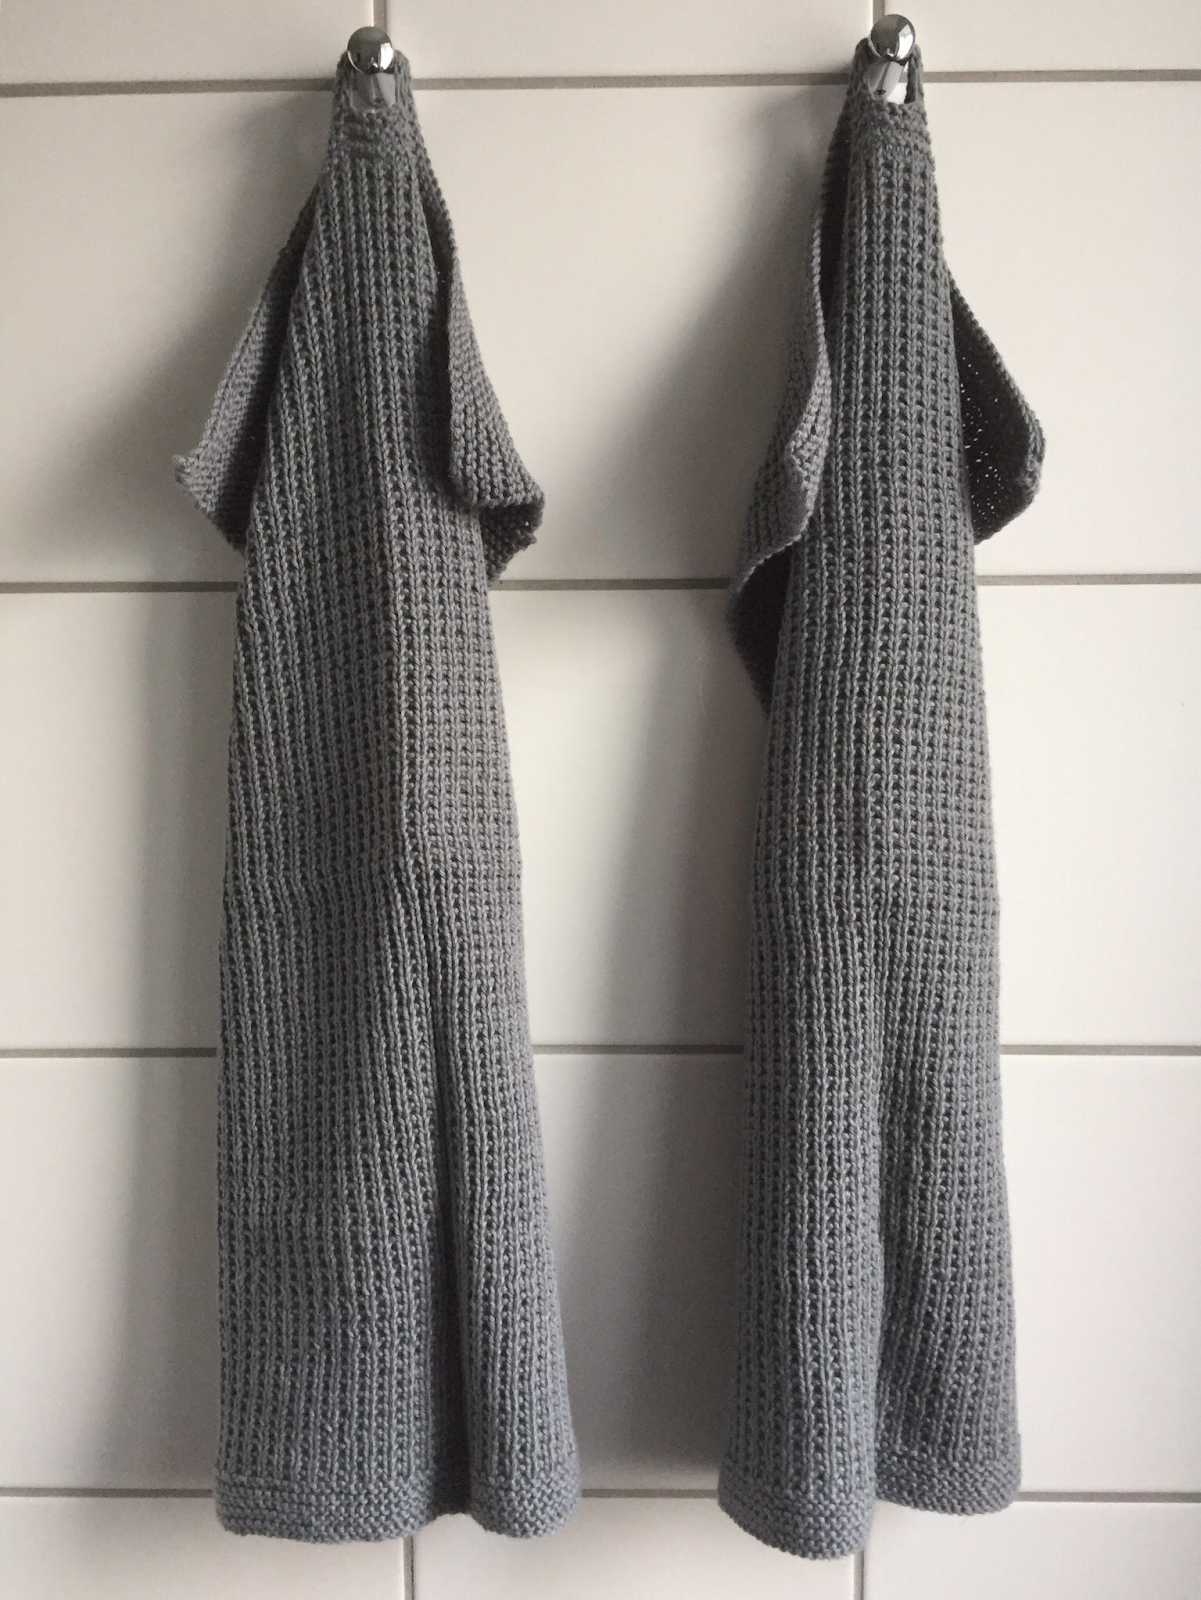 Tæt hele Løsne by GJ: DIY - Strikket køkkenhåndklæde